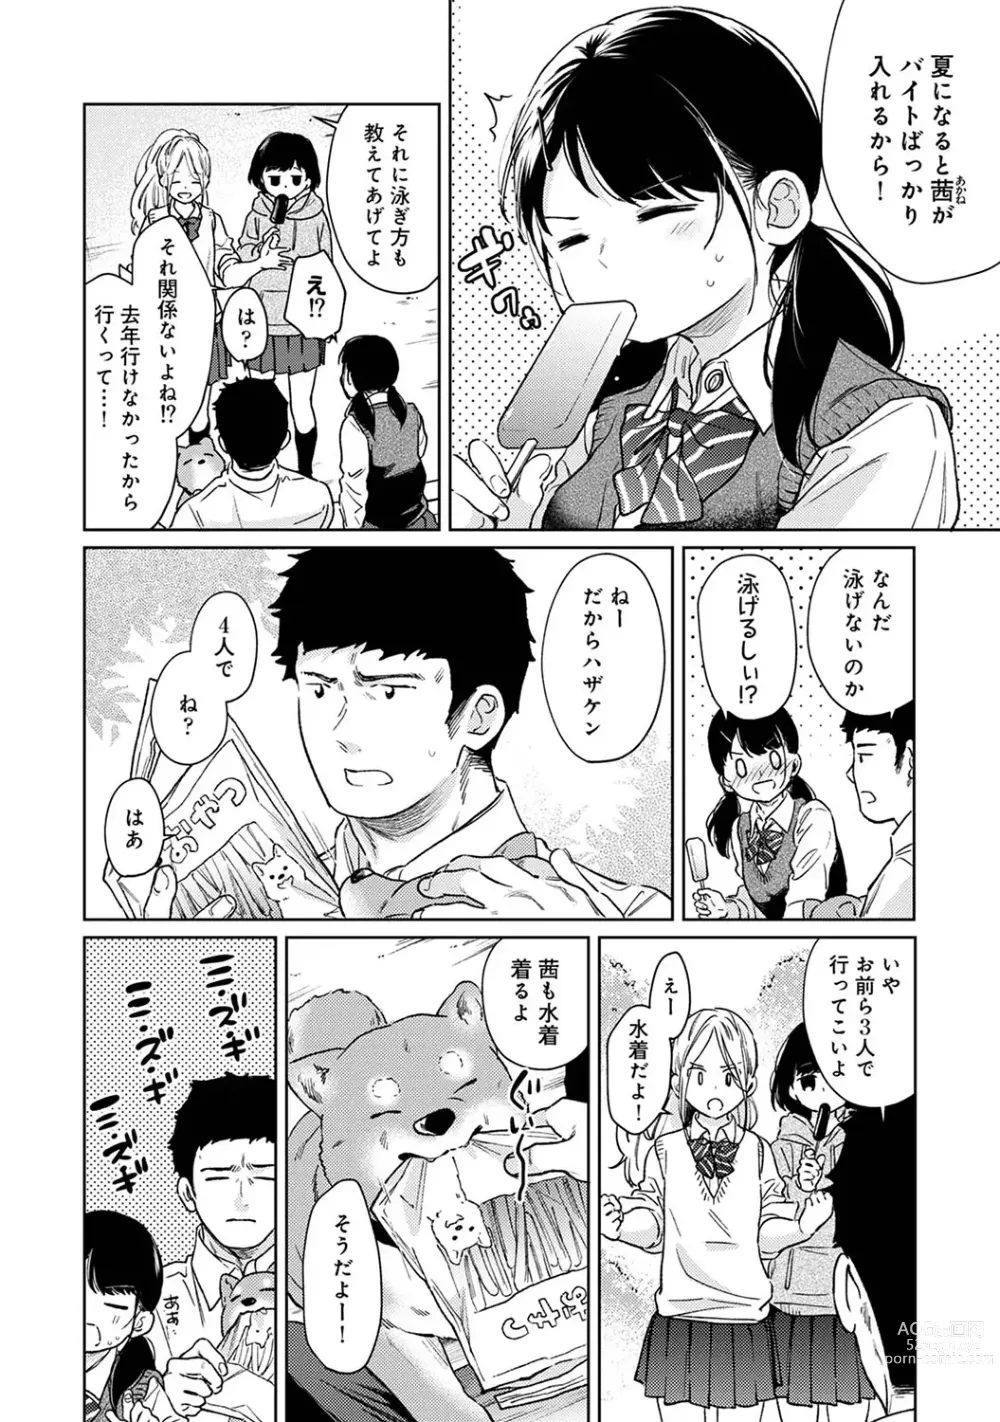 Page 10 of manga COMIC Ananga Ranga Vol. 101